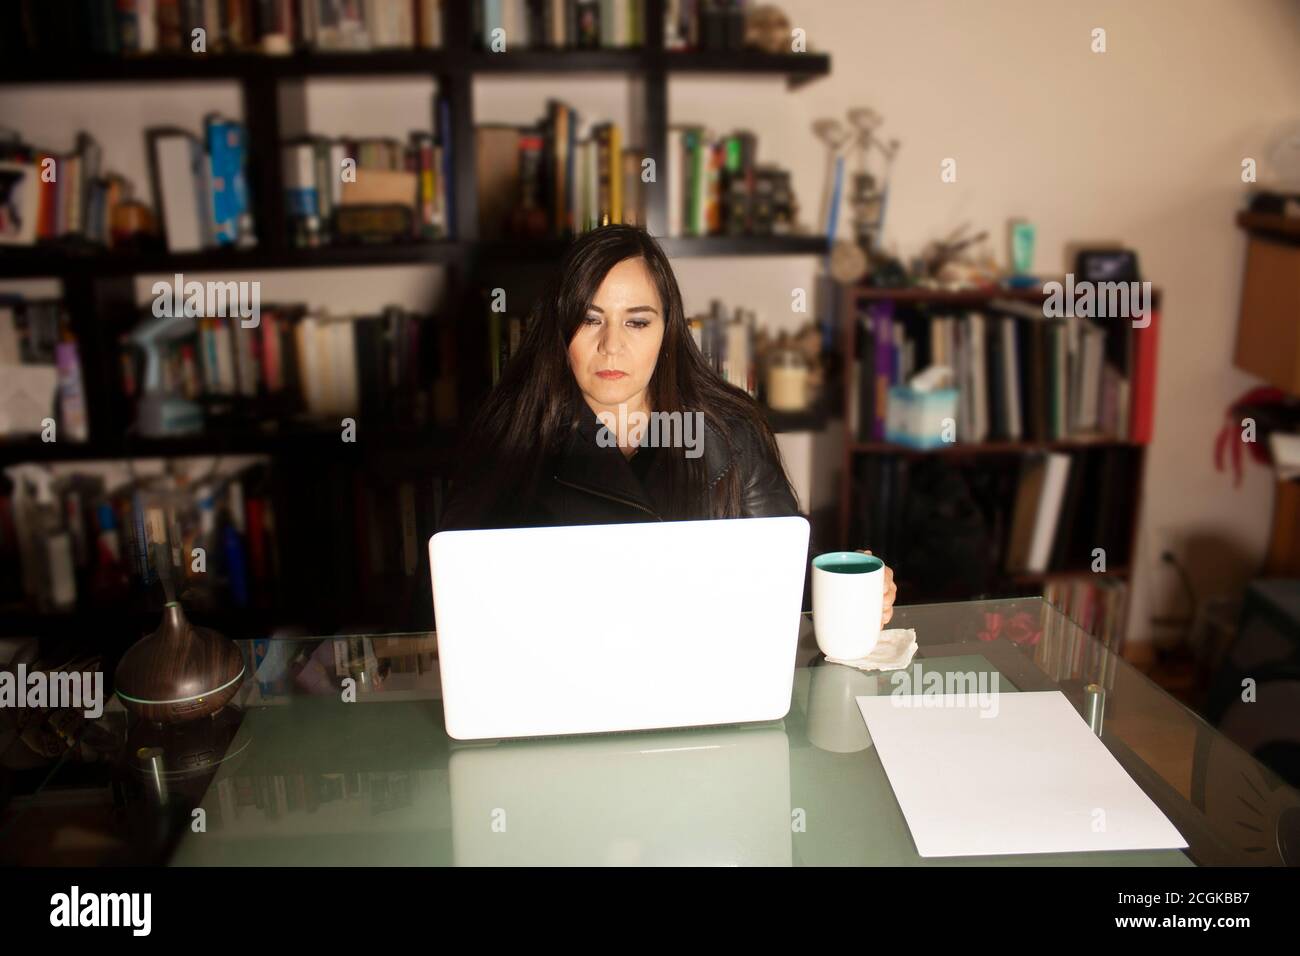 Frau, die zu Hause mit einem Laptop arbeitet, während sie von begleitet wird Eine Tasse Kaffee umgeben von Büchern entspannt die Umgebung Mit einem arom Luftbefeuchter Stockfoto